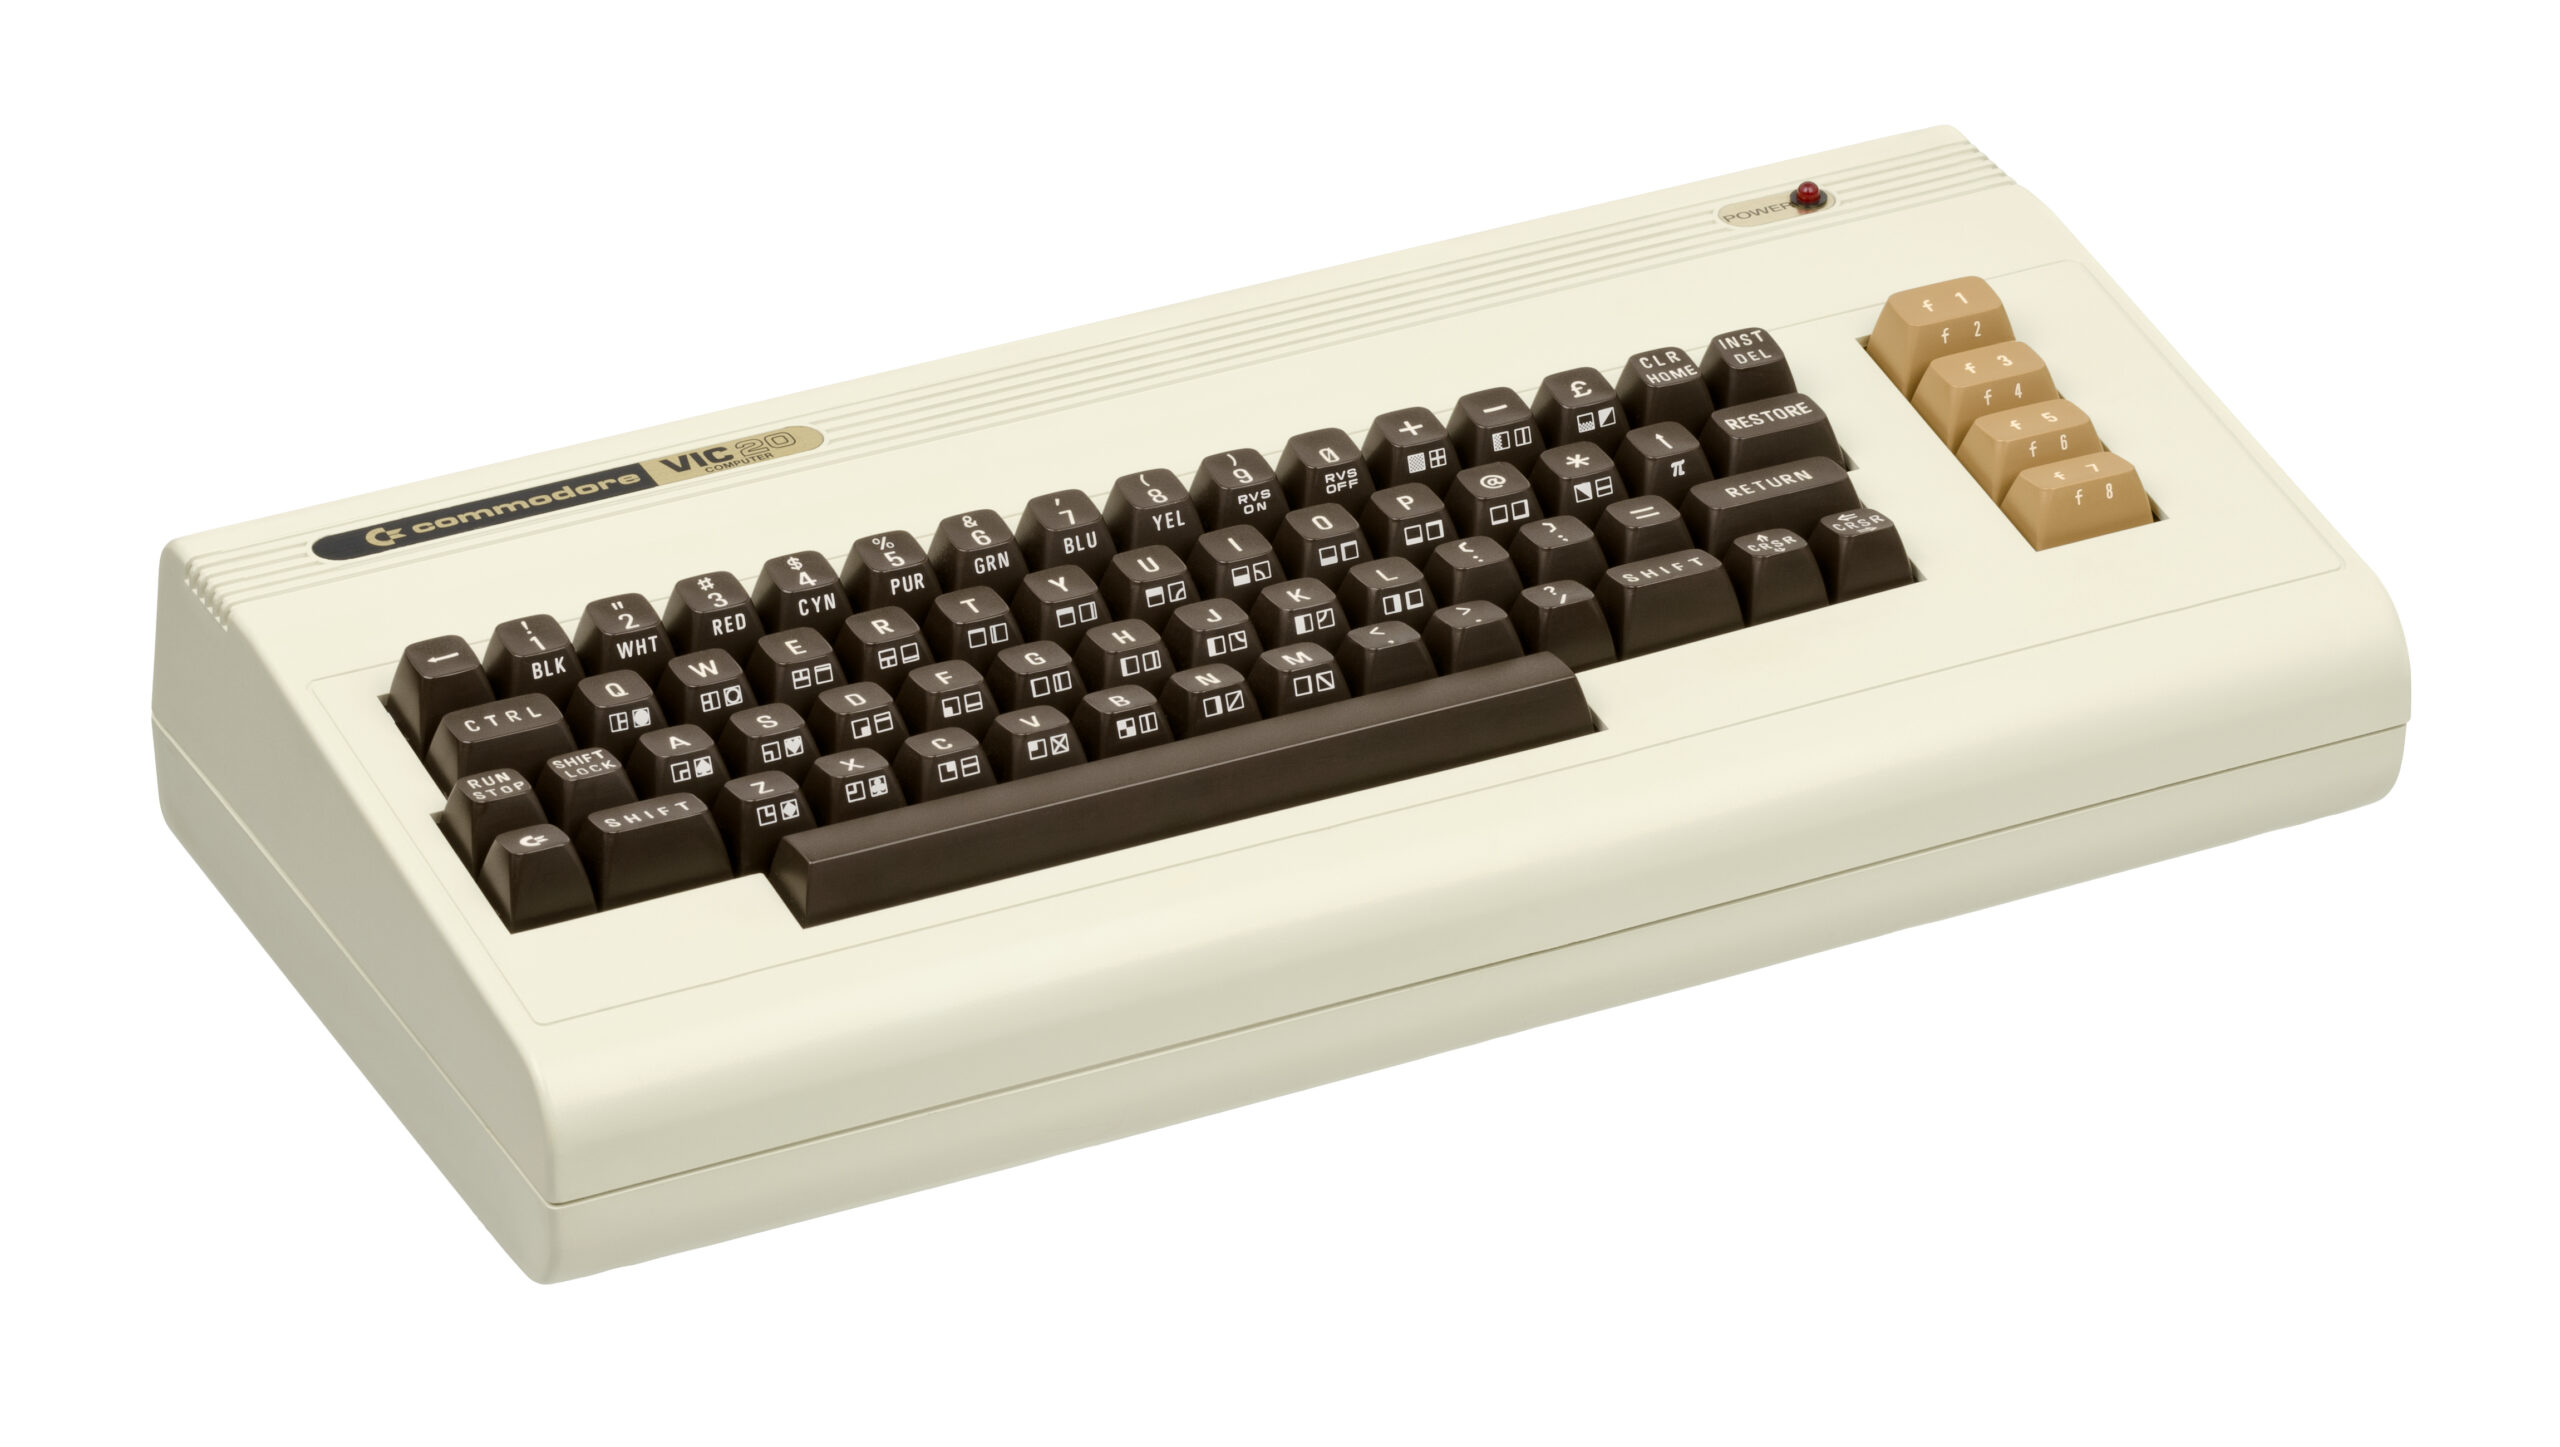 Commodore VIC 20